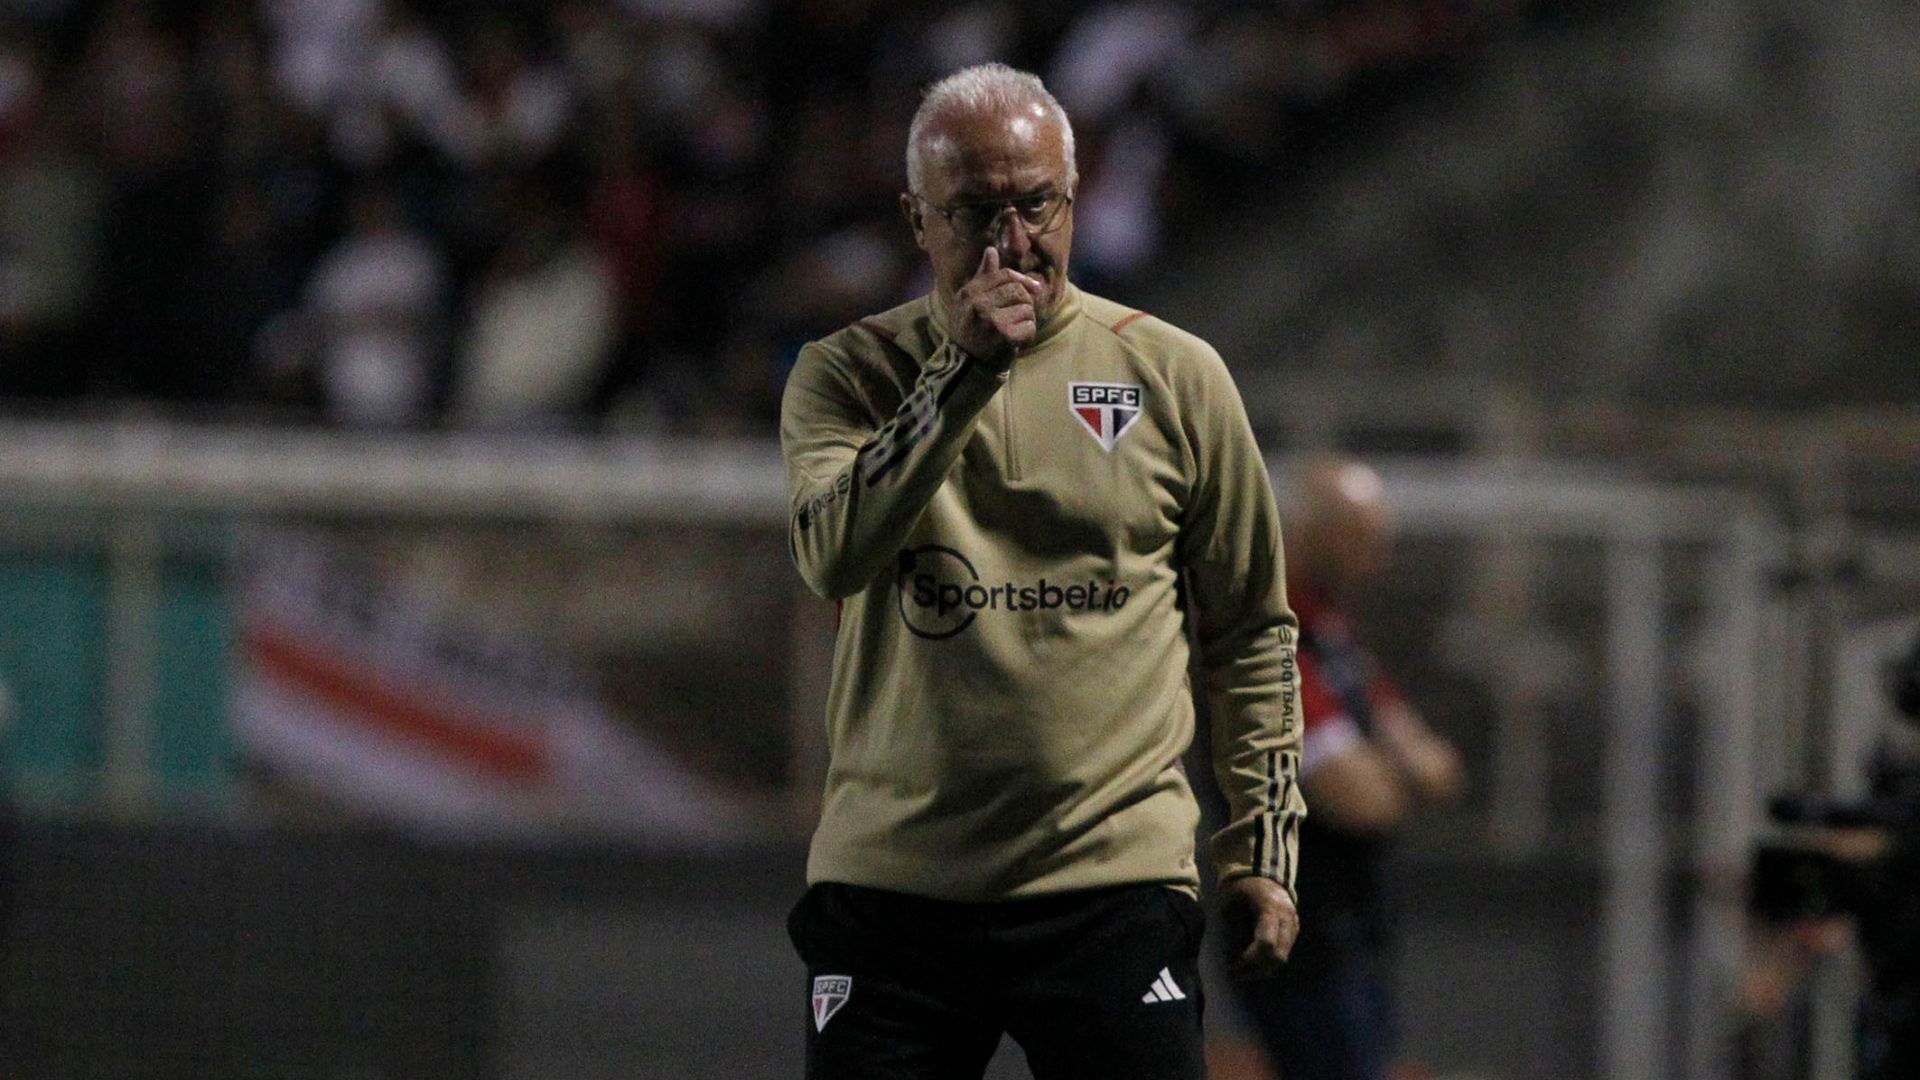 Dorival Jr current coach of São Paulo